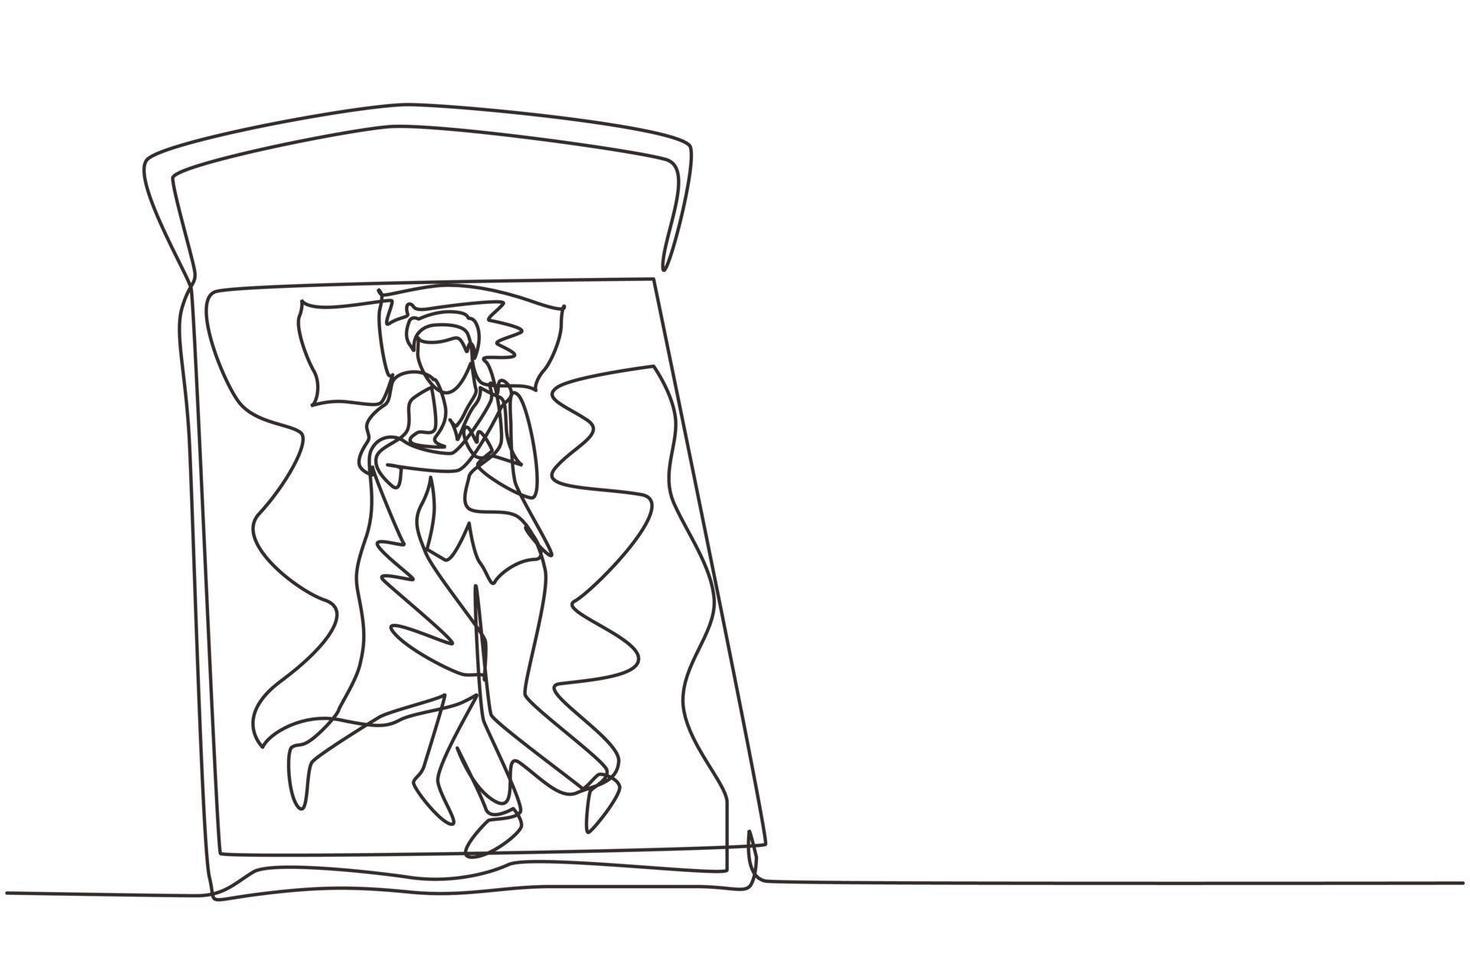 dibujo continuo de una línea pareja masculina y femenina abrazándose cariñosamente en la cama, hombres y mujeres durmiendo en la cama mientras se abrazan amorosamente, durmiendo pose de amante. gráfico vectorial de diseño de dibujo de una sola línea vector